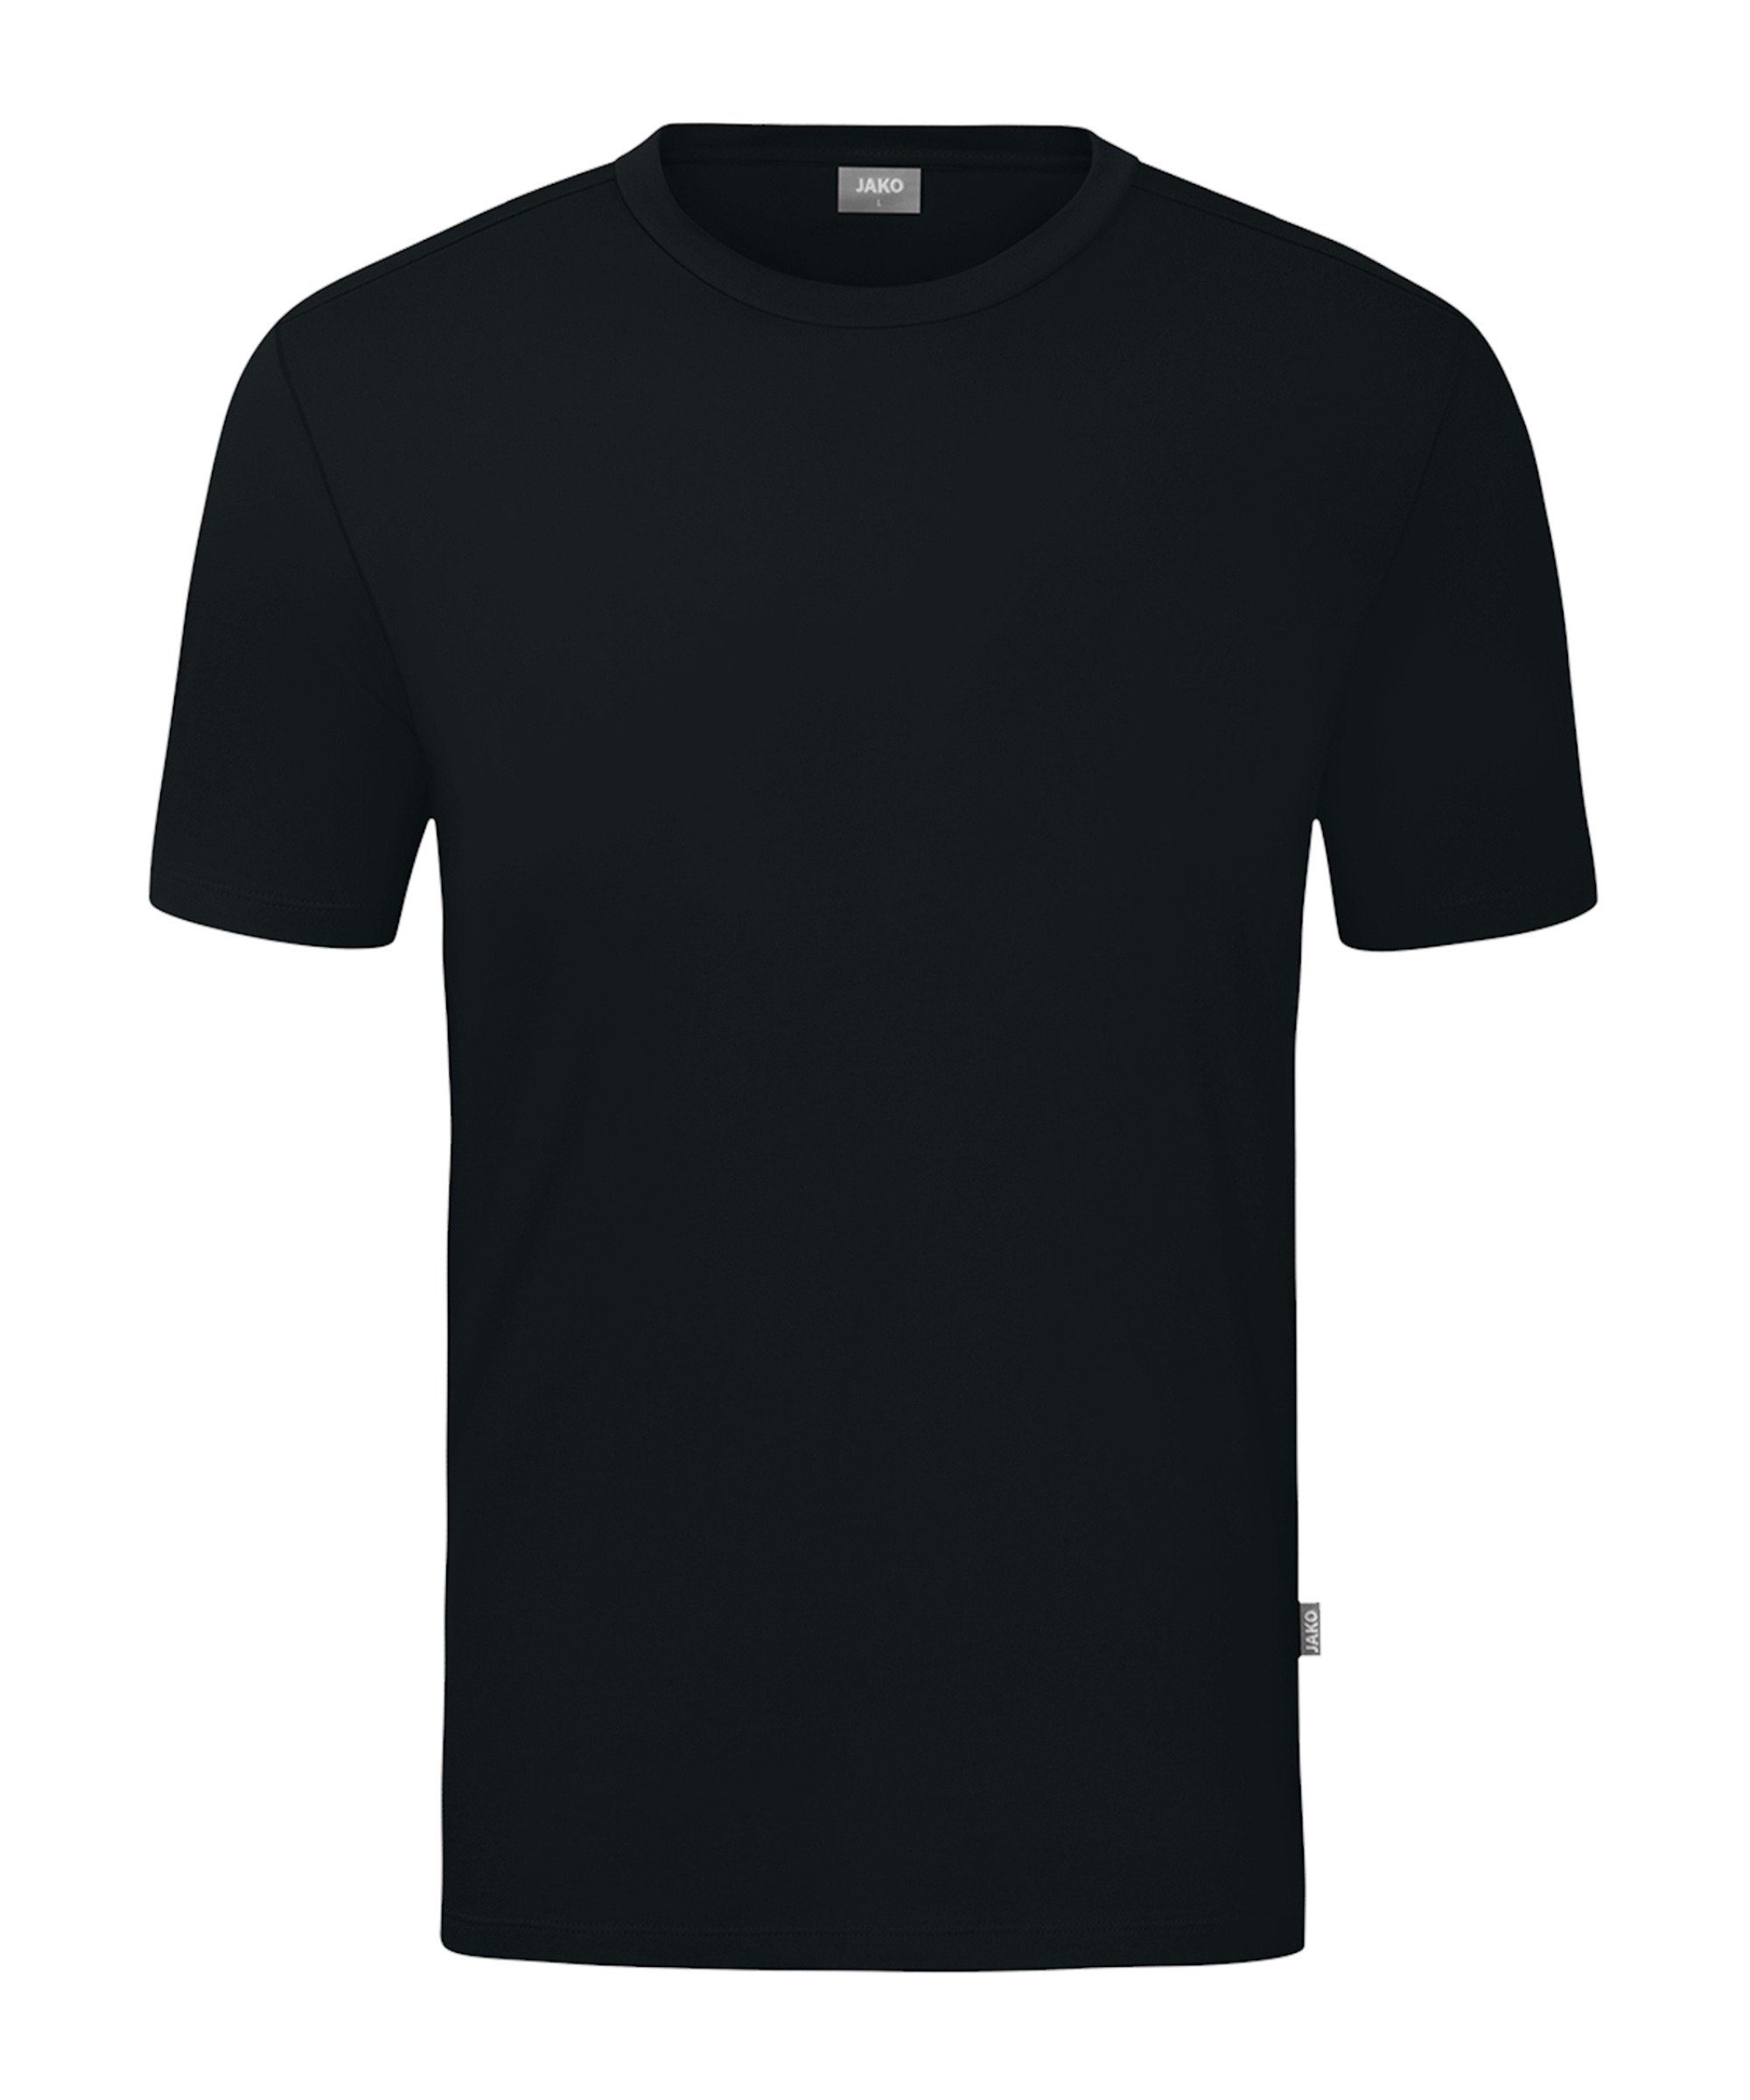 Jako T-Shirt Organic schwarz default T-Shirt